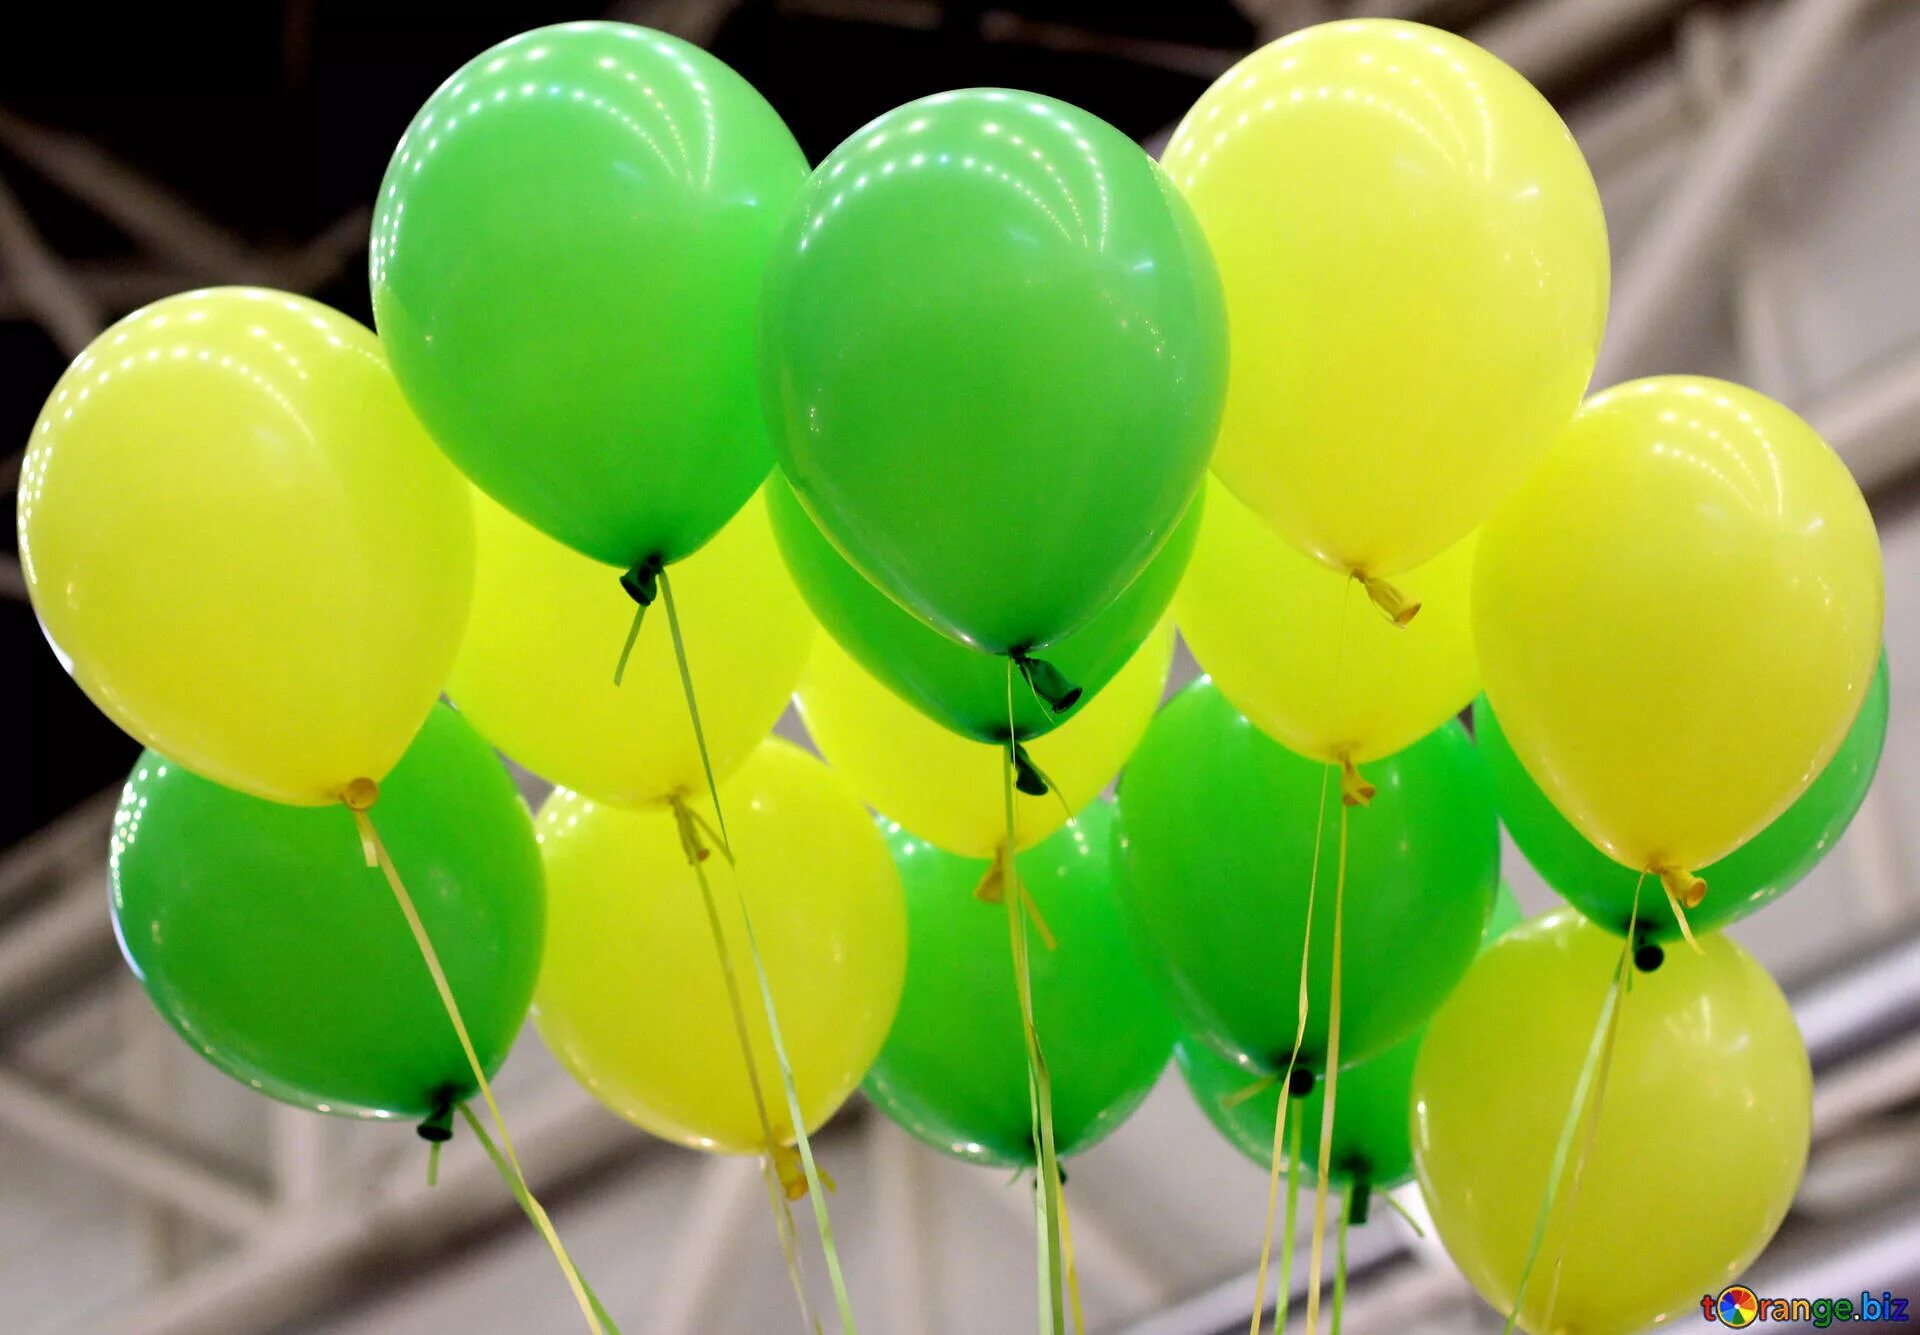 Воздушные шары весной. Воздушный шарик. Яркие воздушные шары. Желтые воздушные шары. Воздушные шары в зеленых тонах.